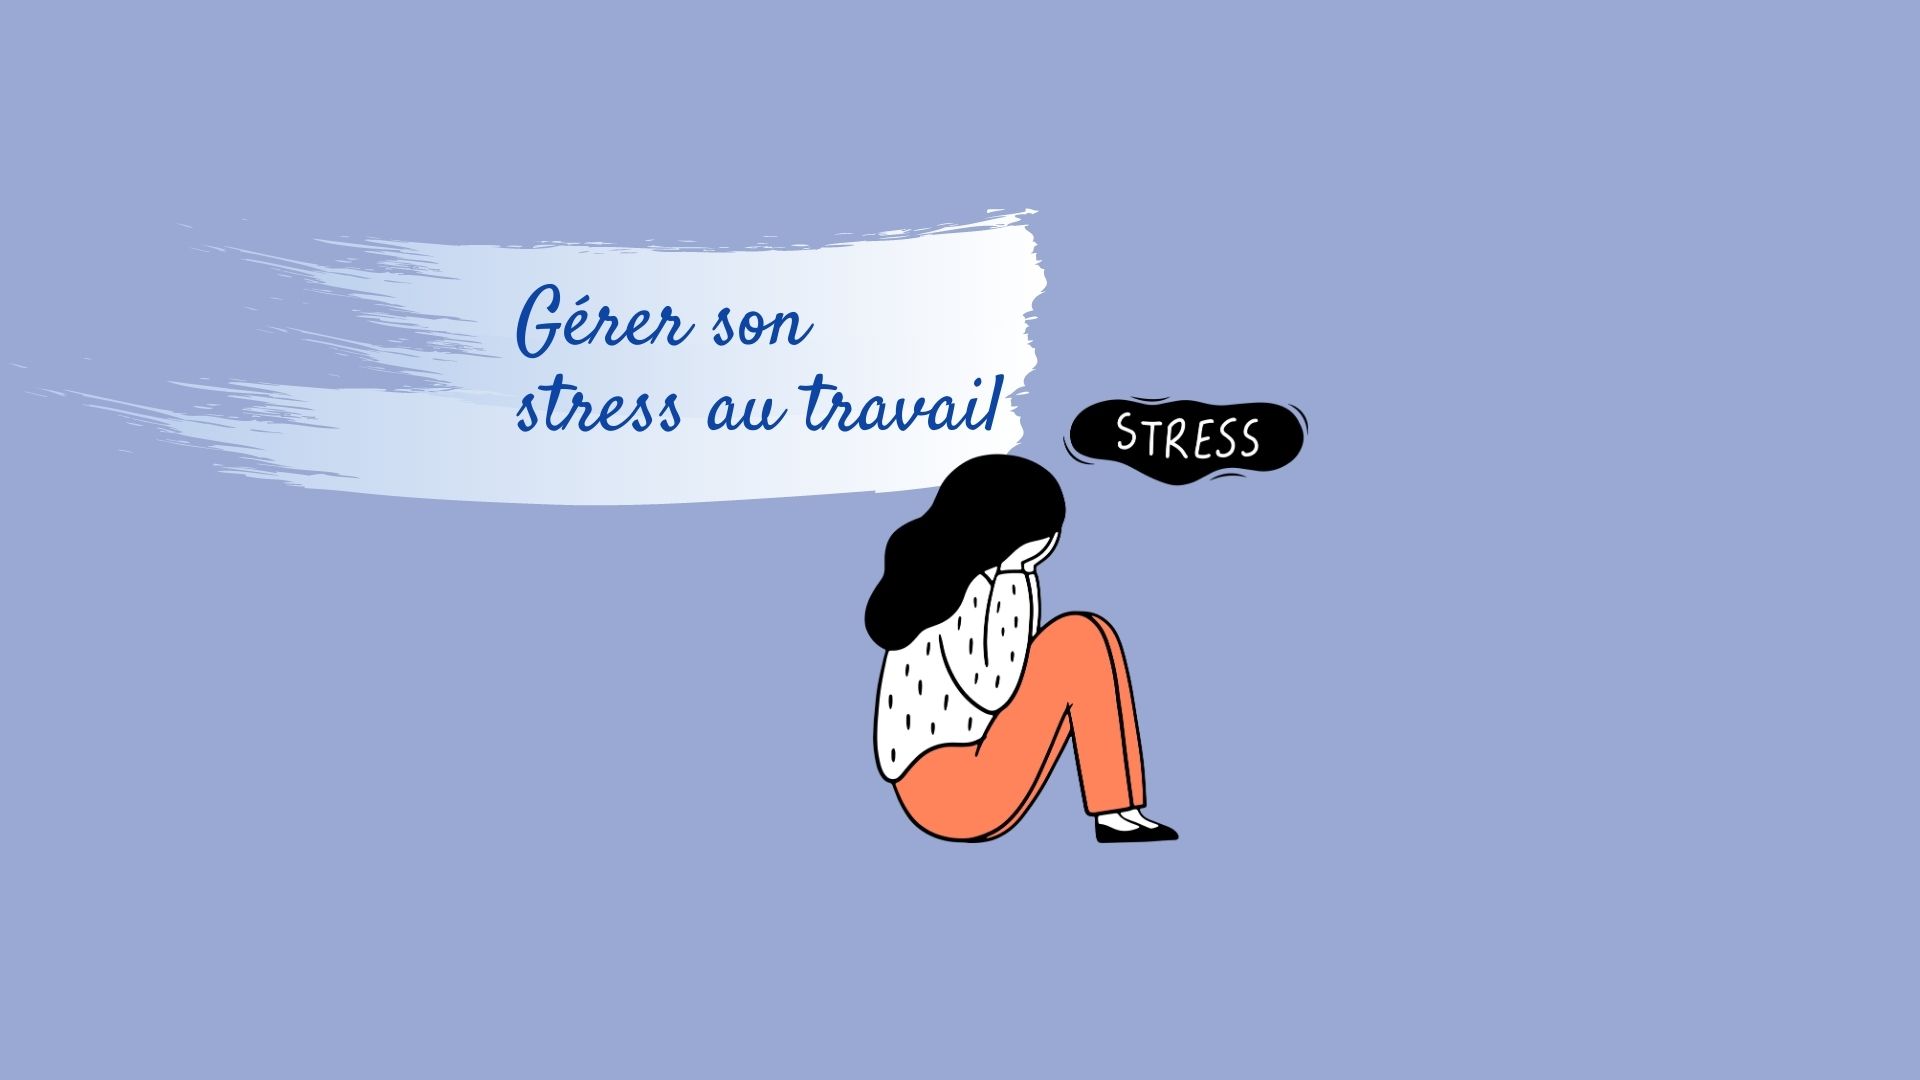 Comment gérer son stress au travail ?